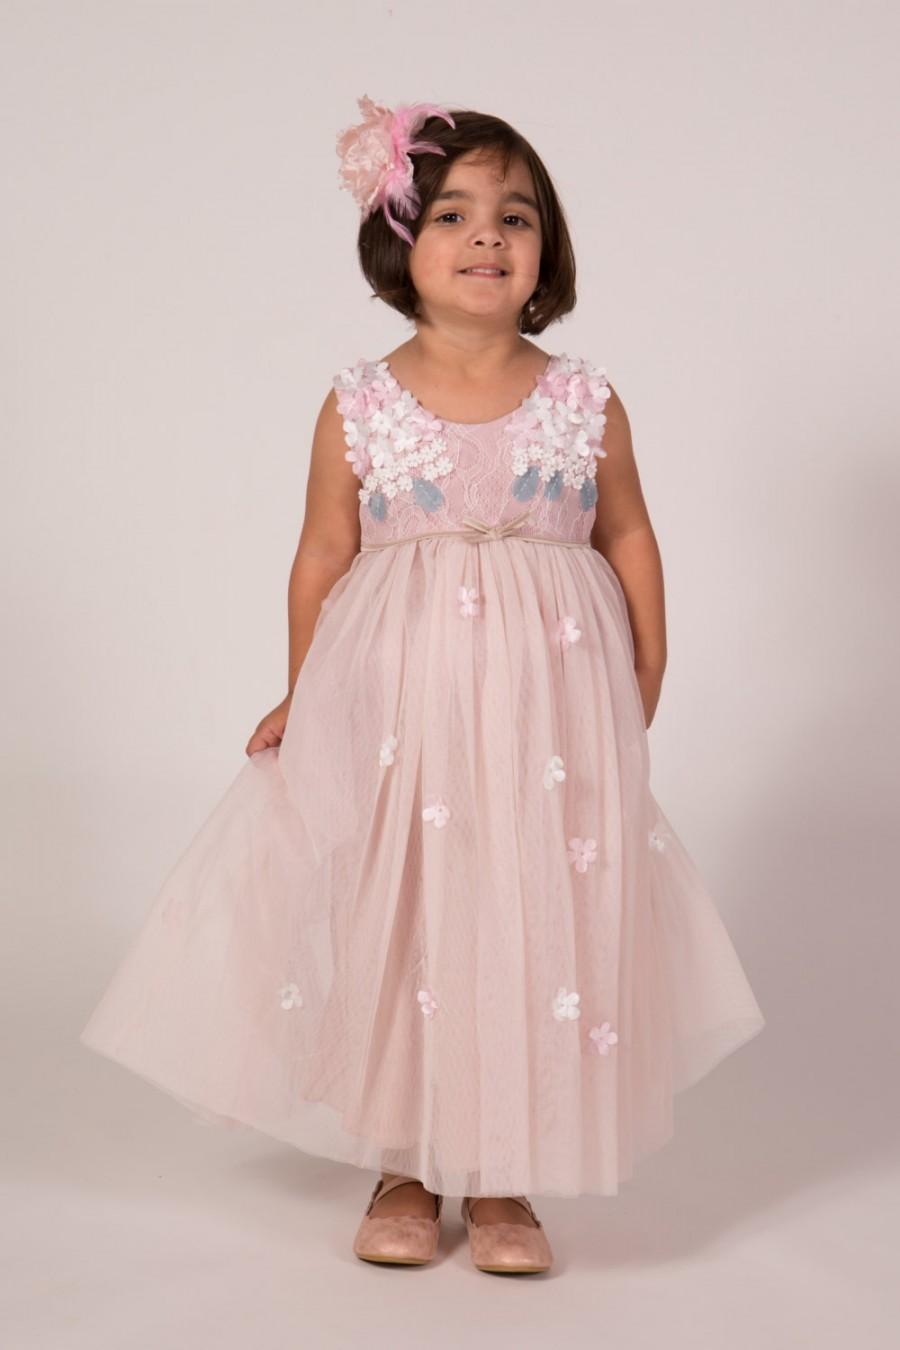 زفاف - Beautiful Blush Pink Flower Girl Dress with Pink and White Flower Bodice and Soft Tulle Long Length